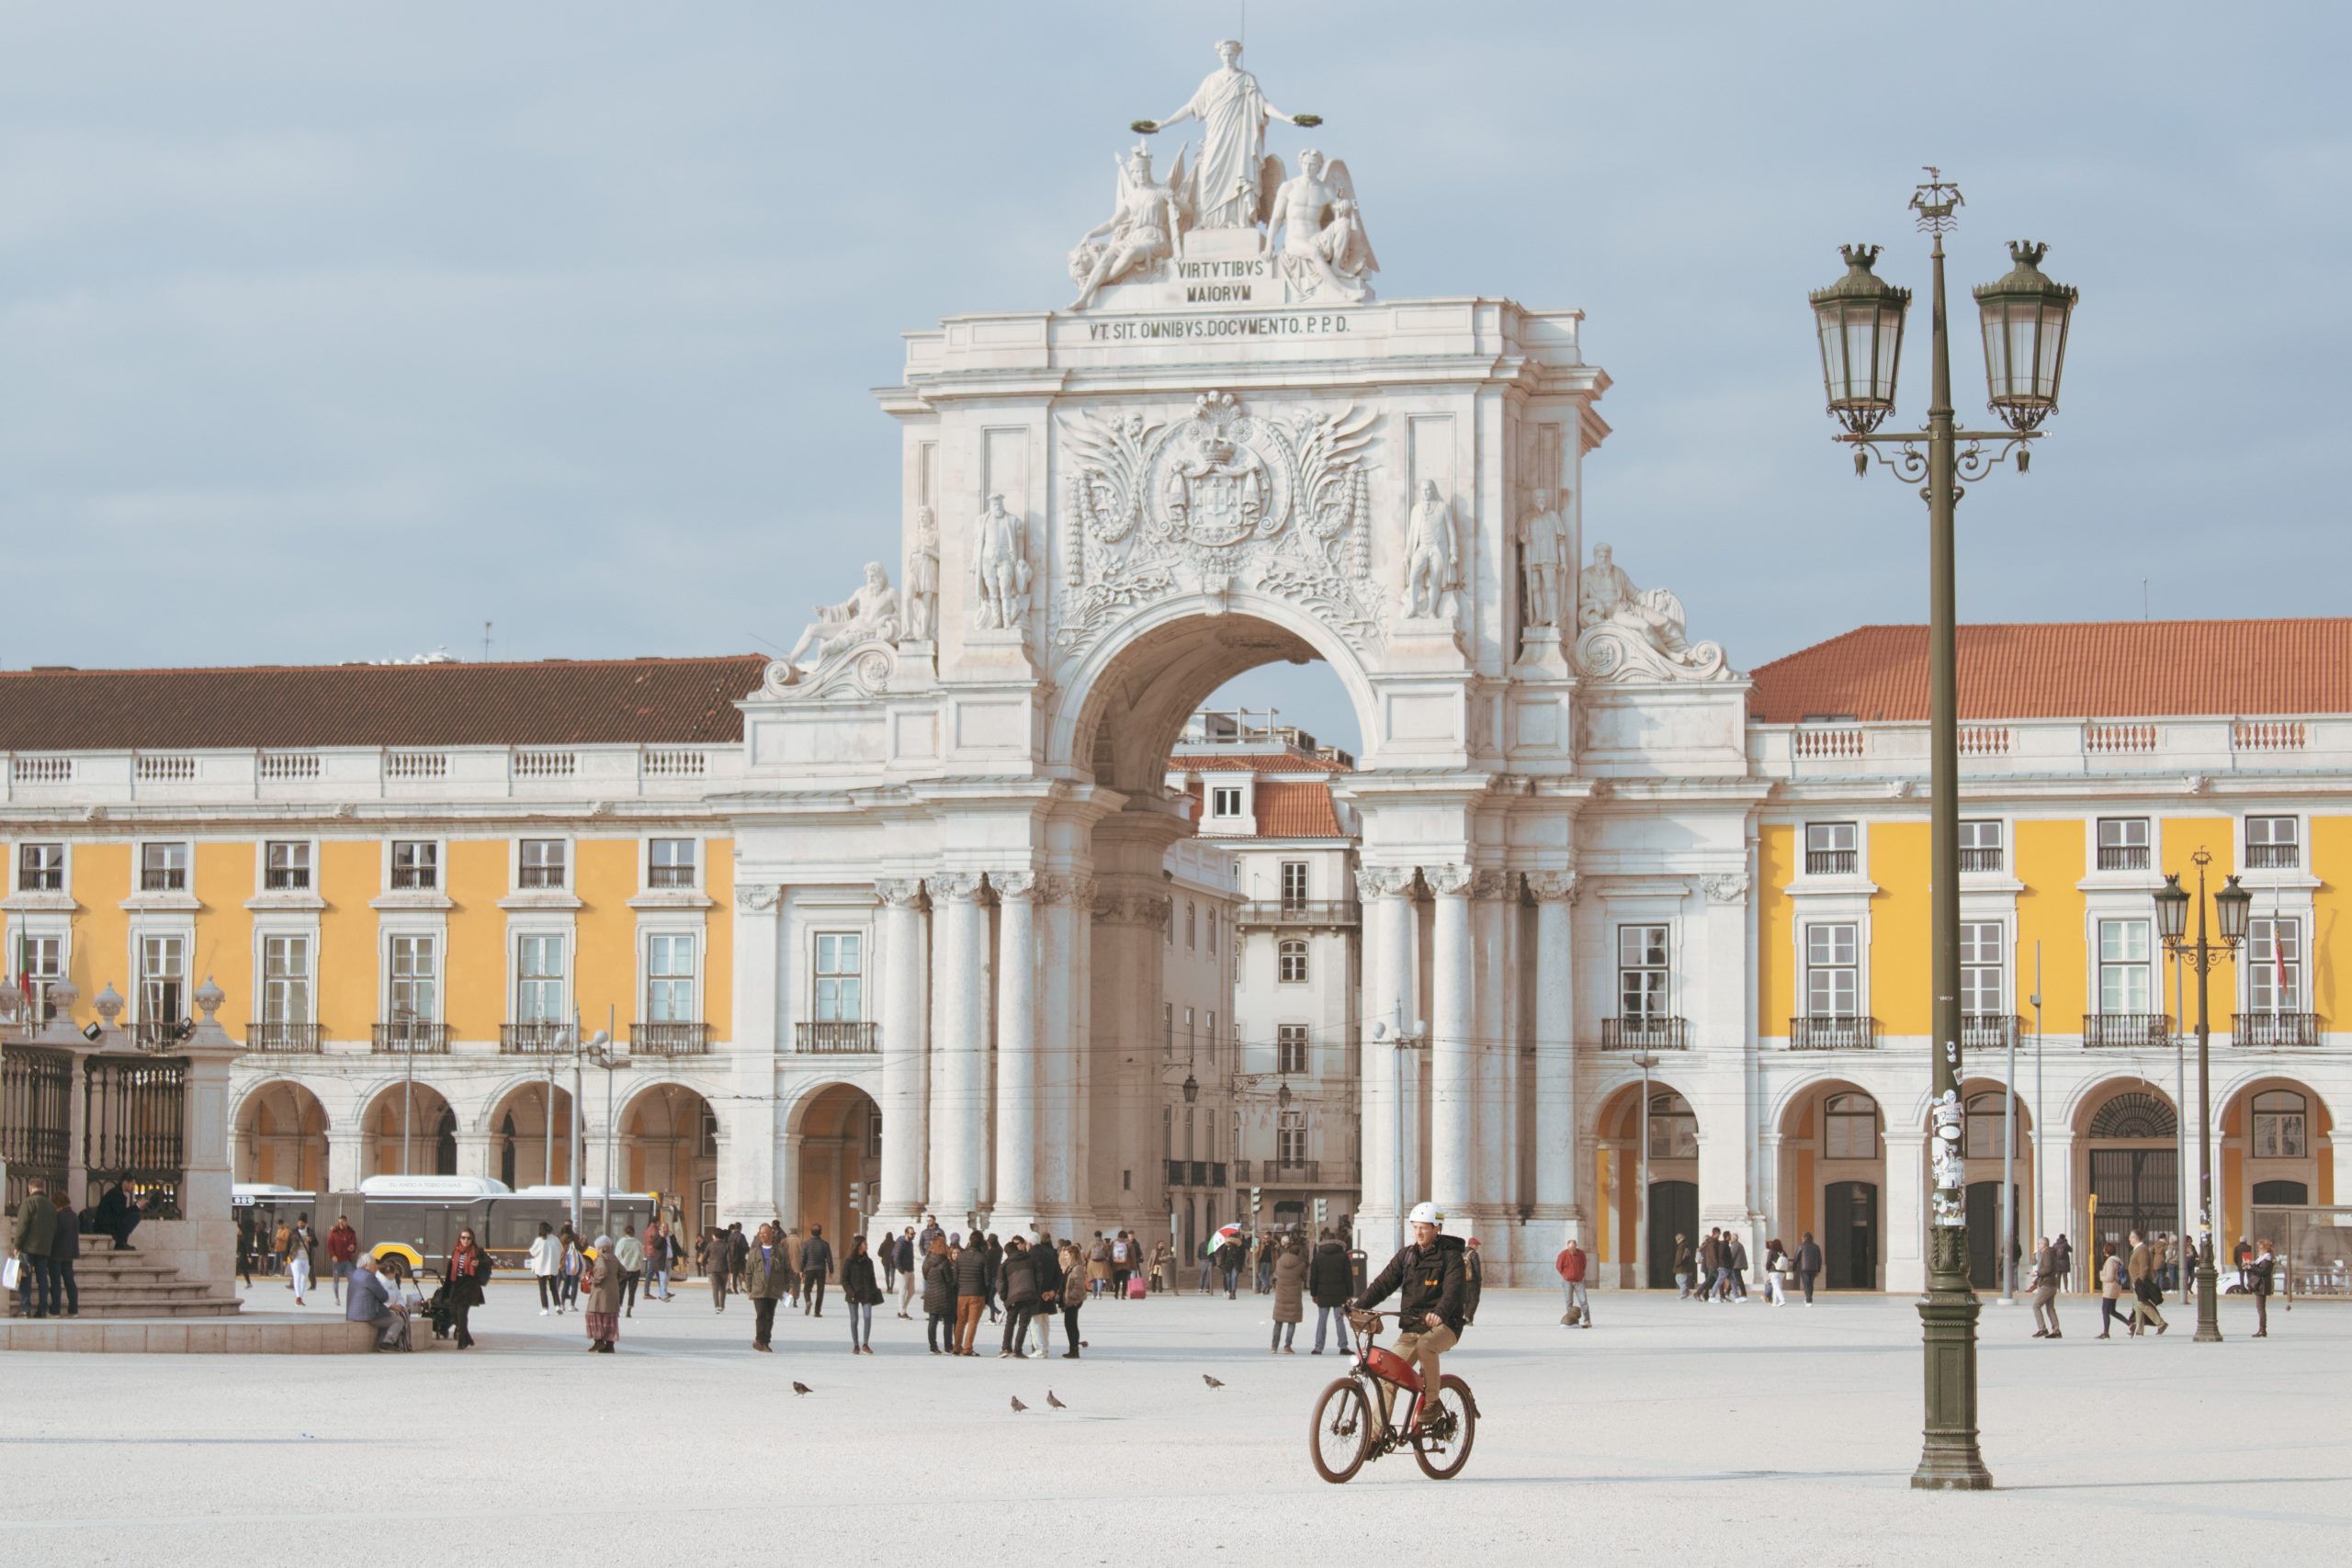 Dicas de viagem para Lisboa por uma local